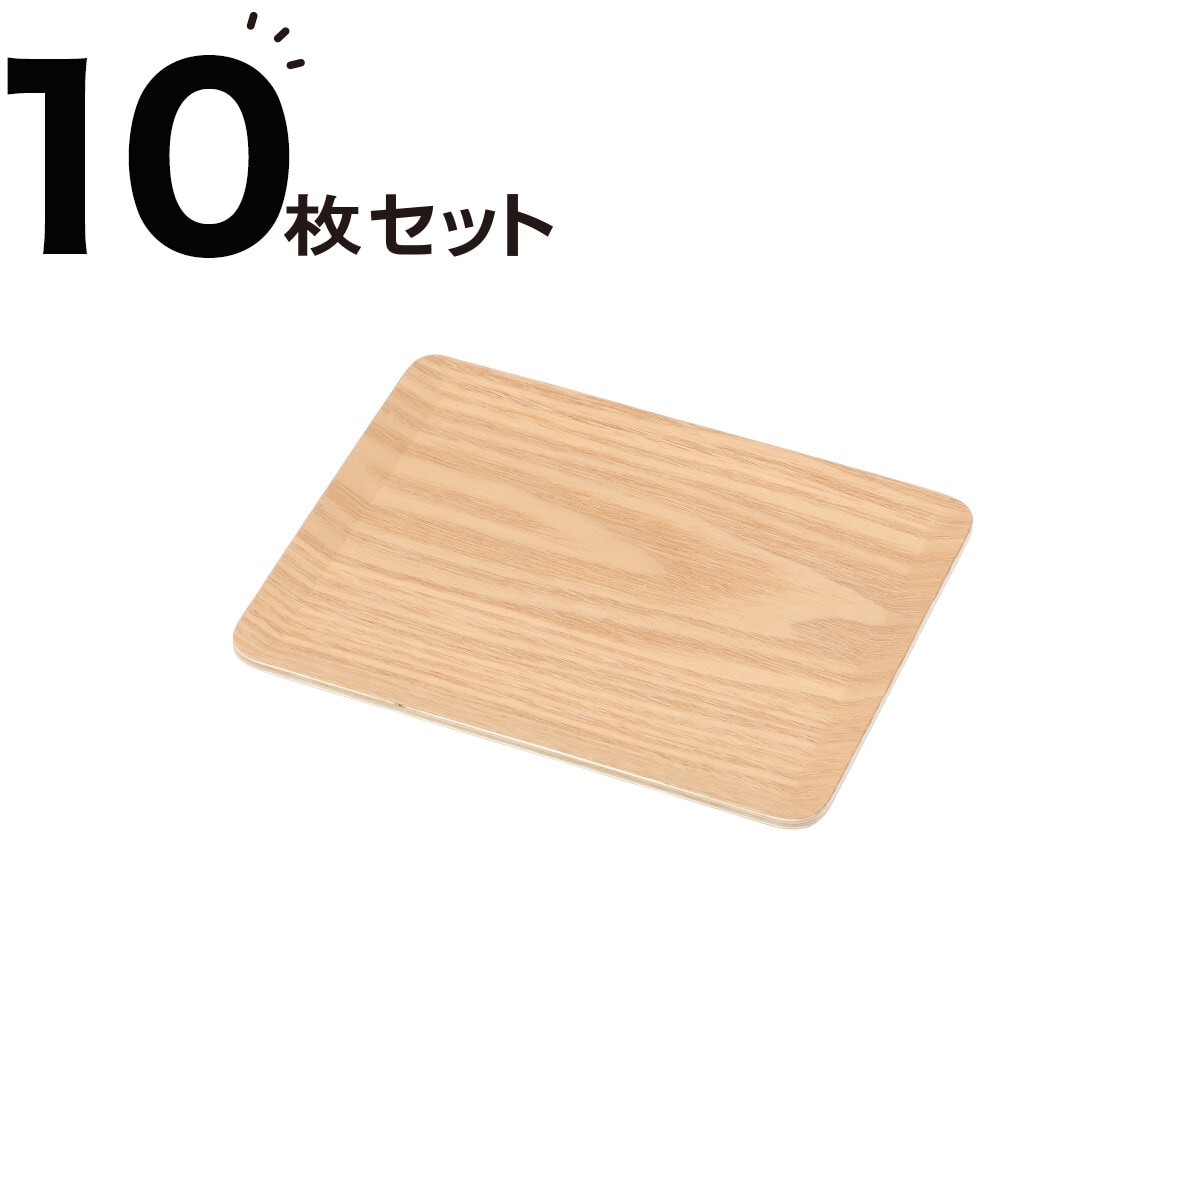 ニトリの[幅18cm] すべりにくい木製トレー(SS ヤナギ)10枚セット(キッチン)